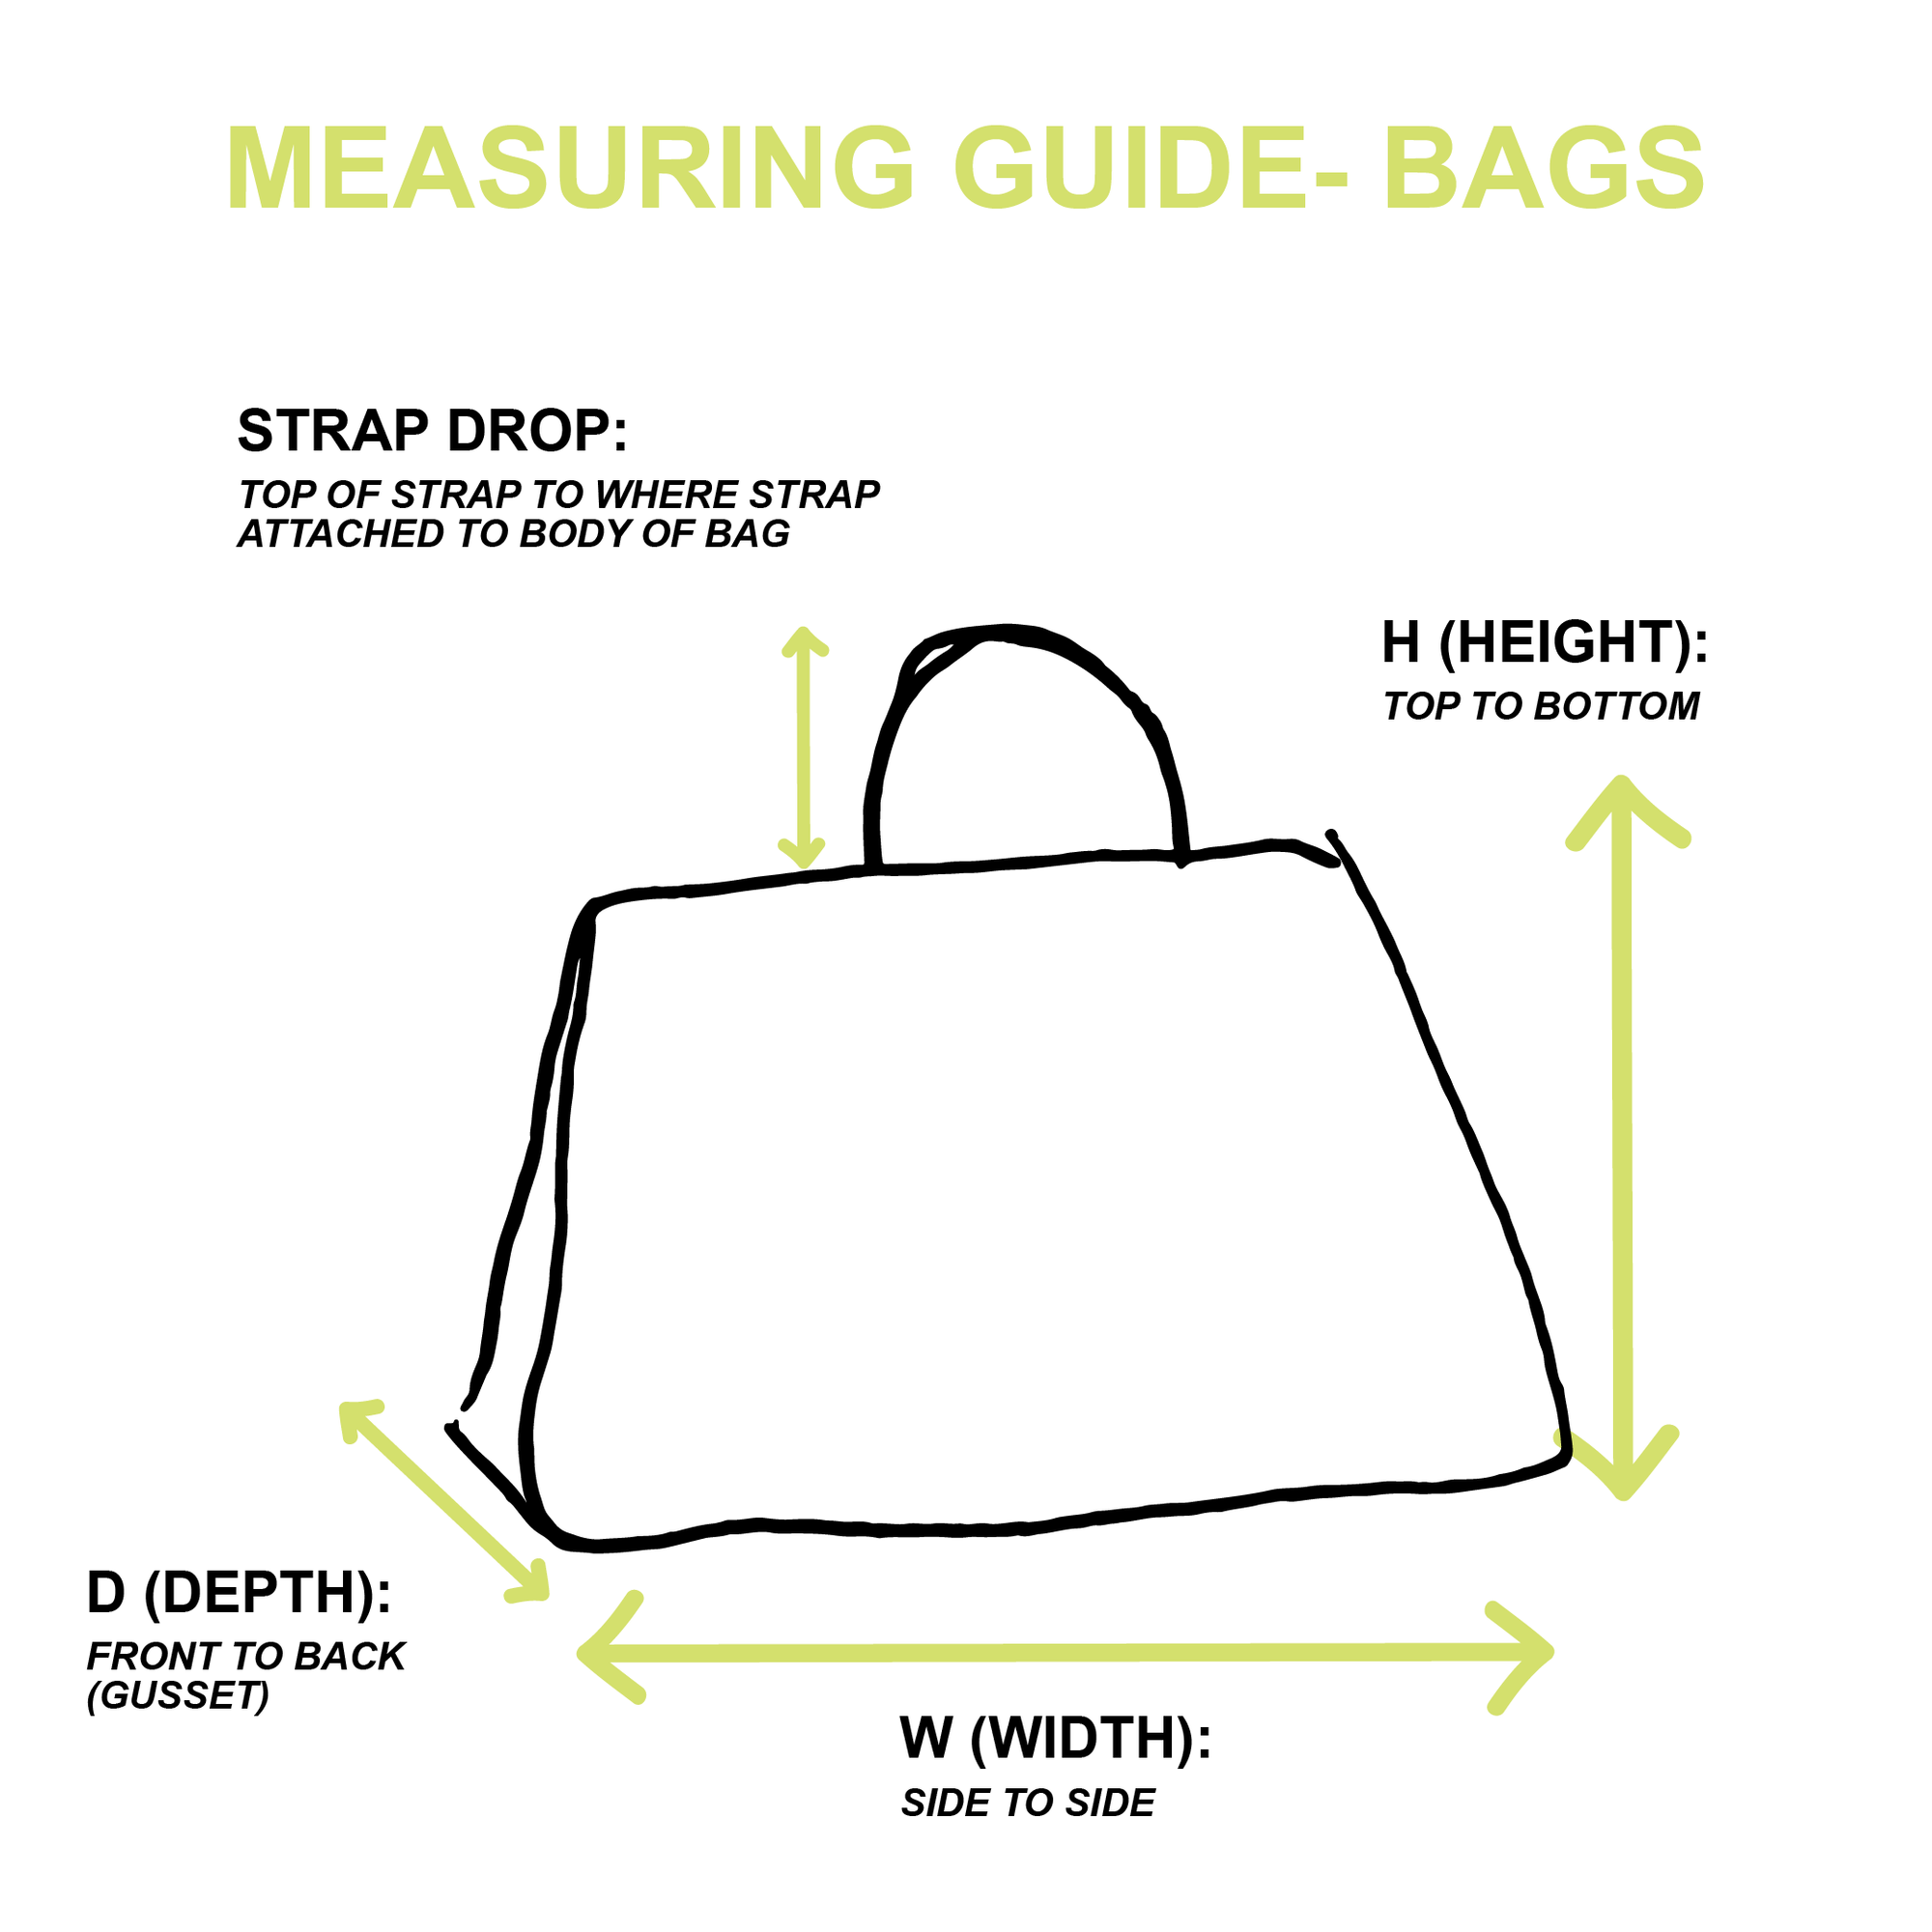 Chanel Black Canvas Logo Shoulder Bag - Handbags